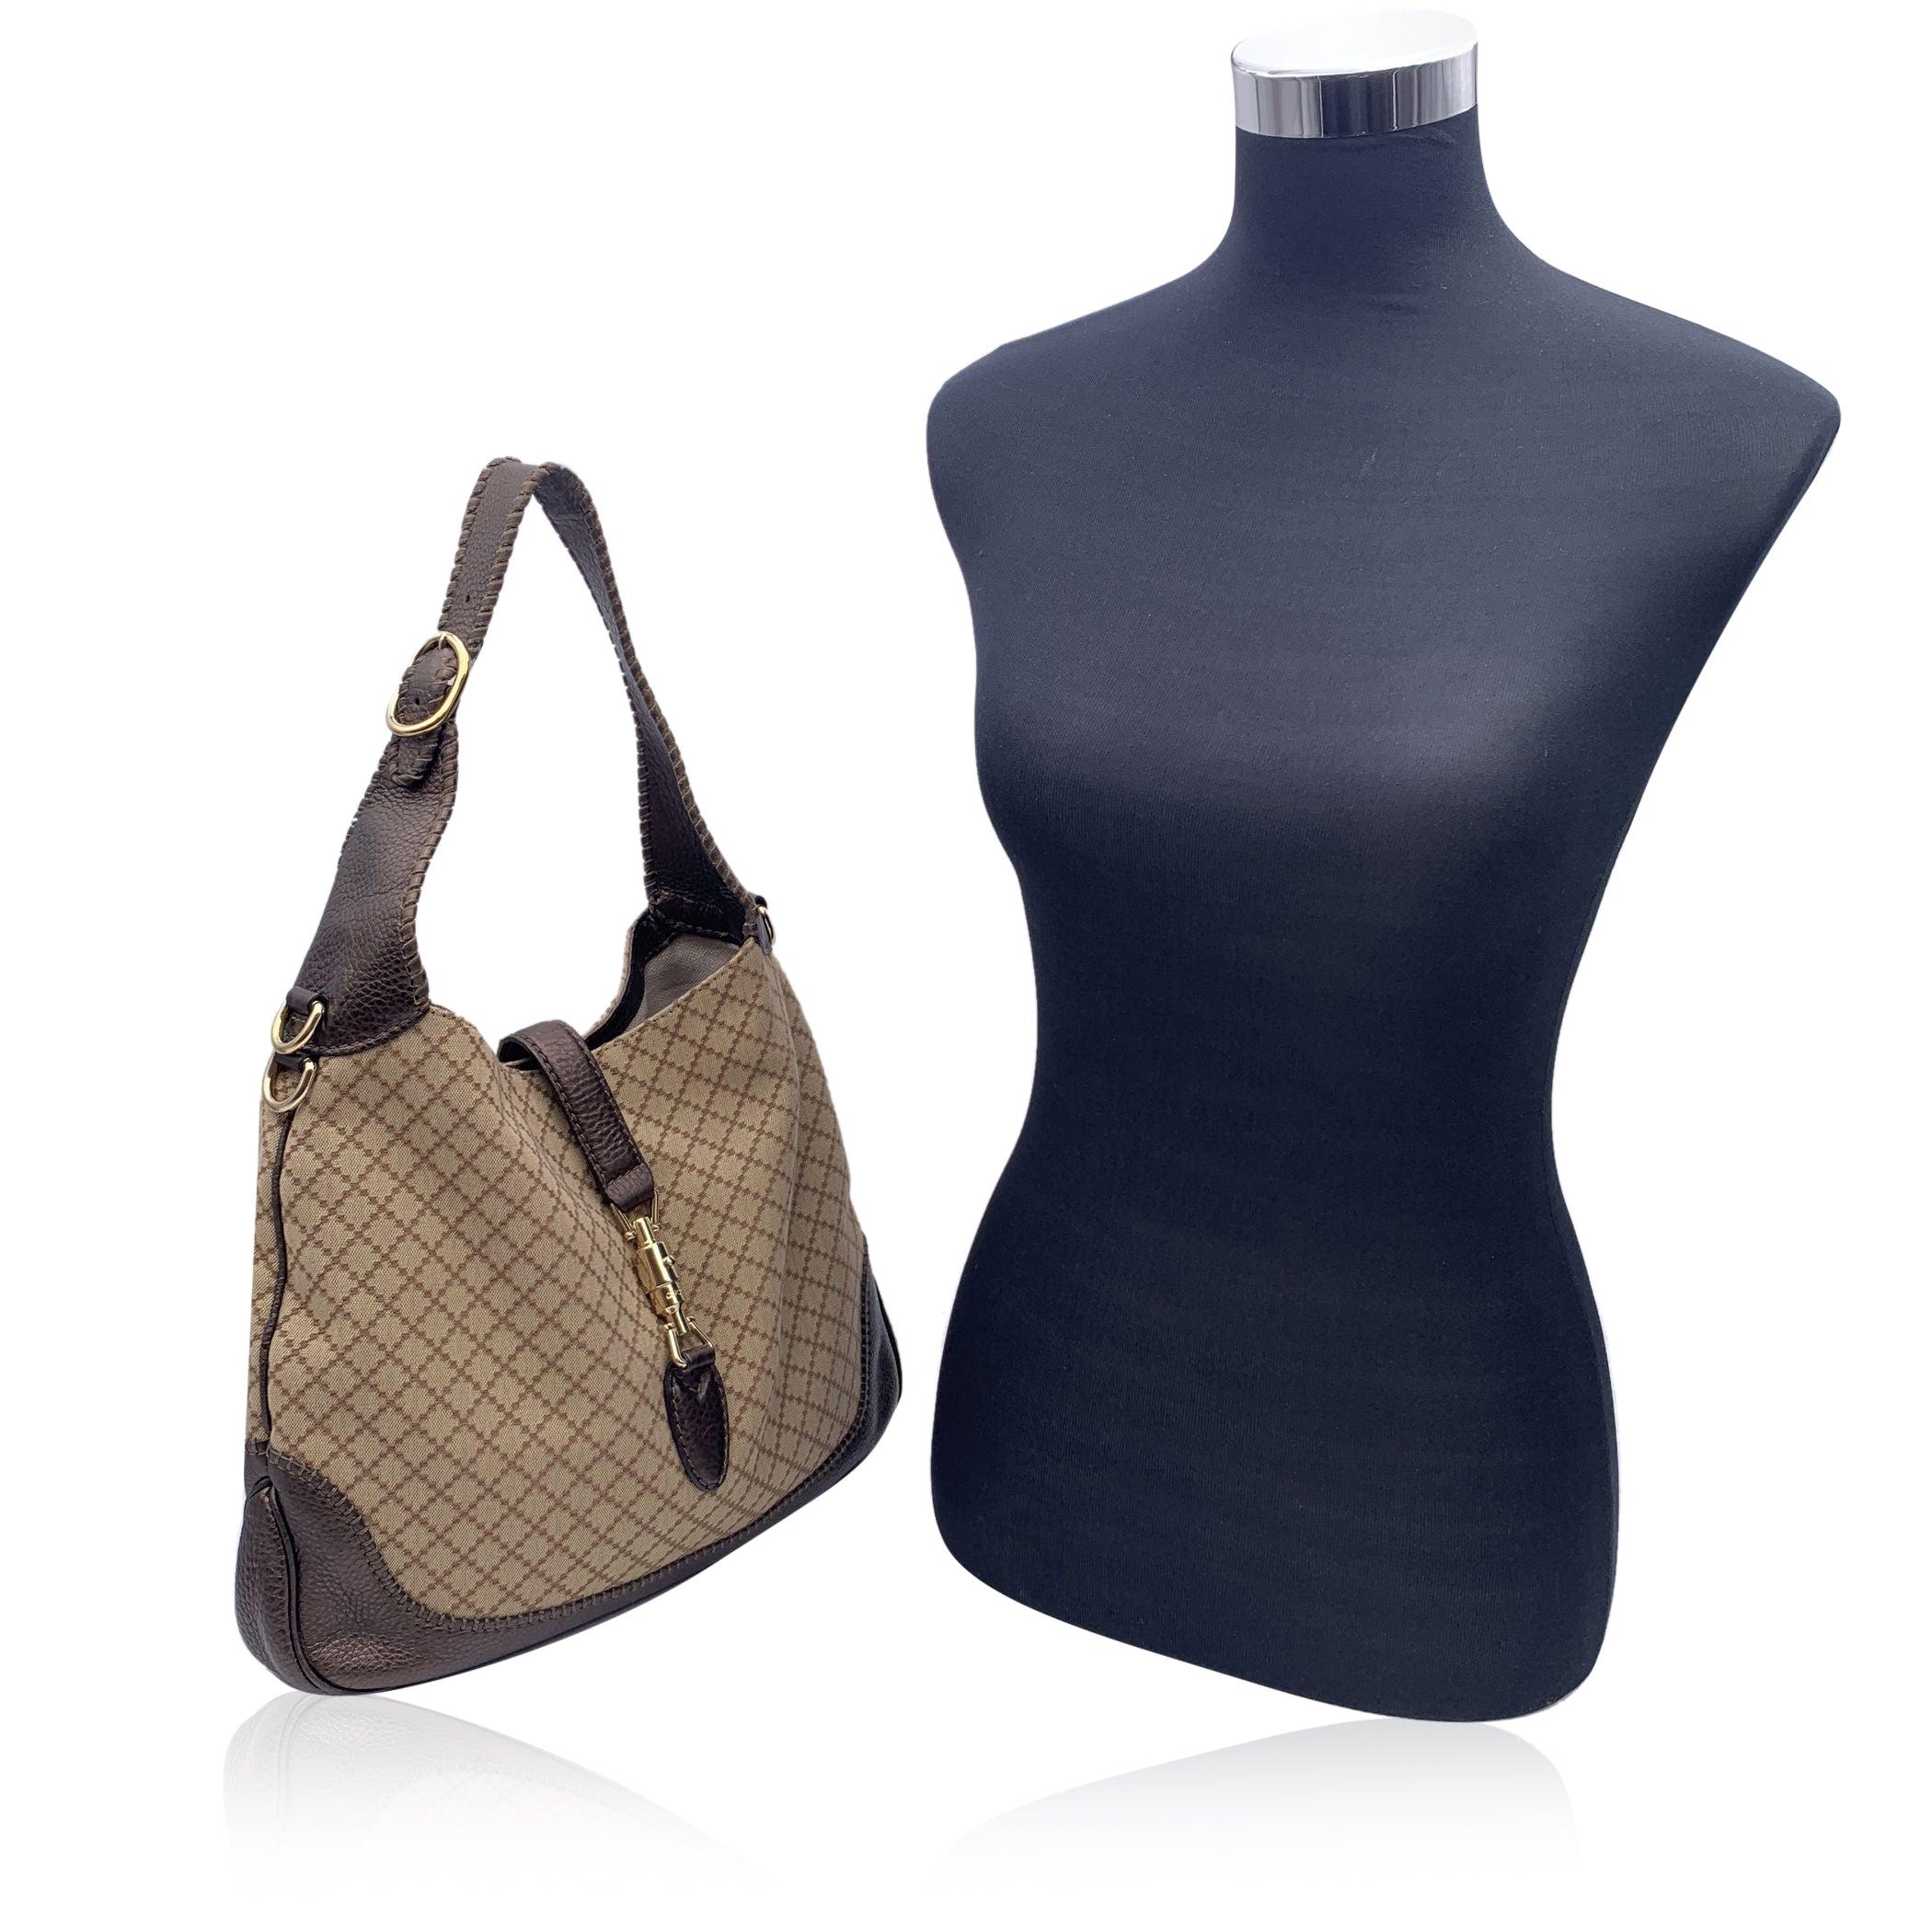 Magnifique sac hobo 'New Jackie' de Gucci. Le sac est réalisé en toile diamantée beige avec une bordure et une bandoulière en cuir marron. Fermeture classique 